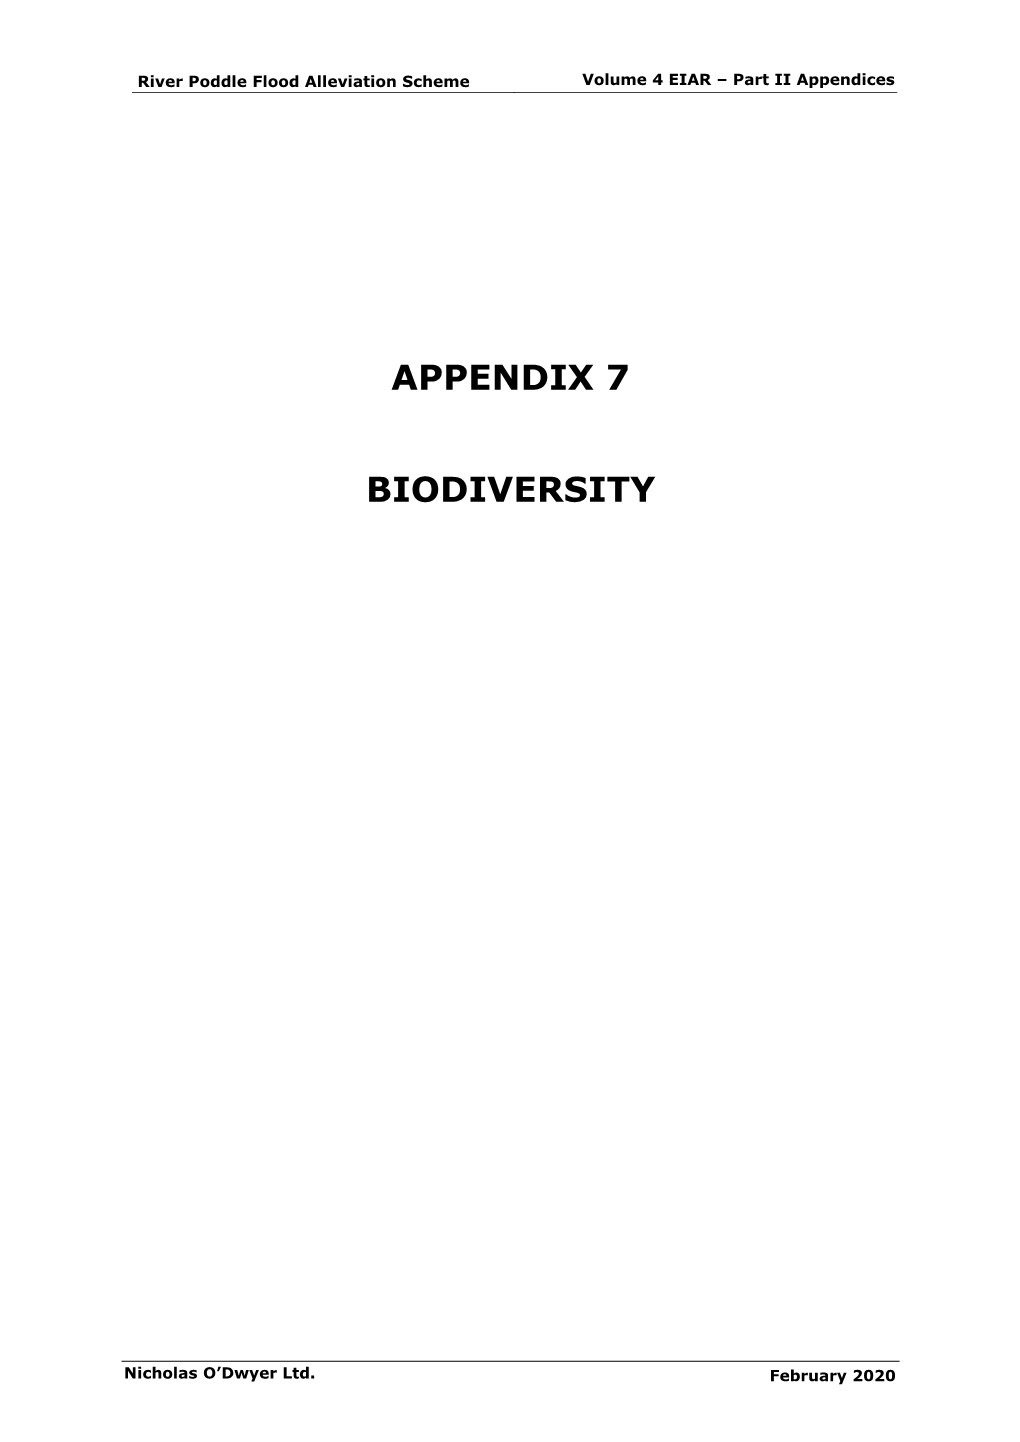 Appendix 7 Biodiversity